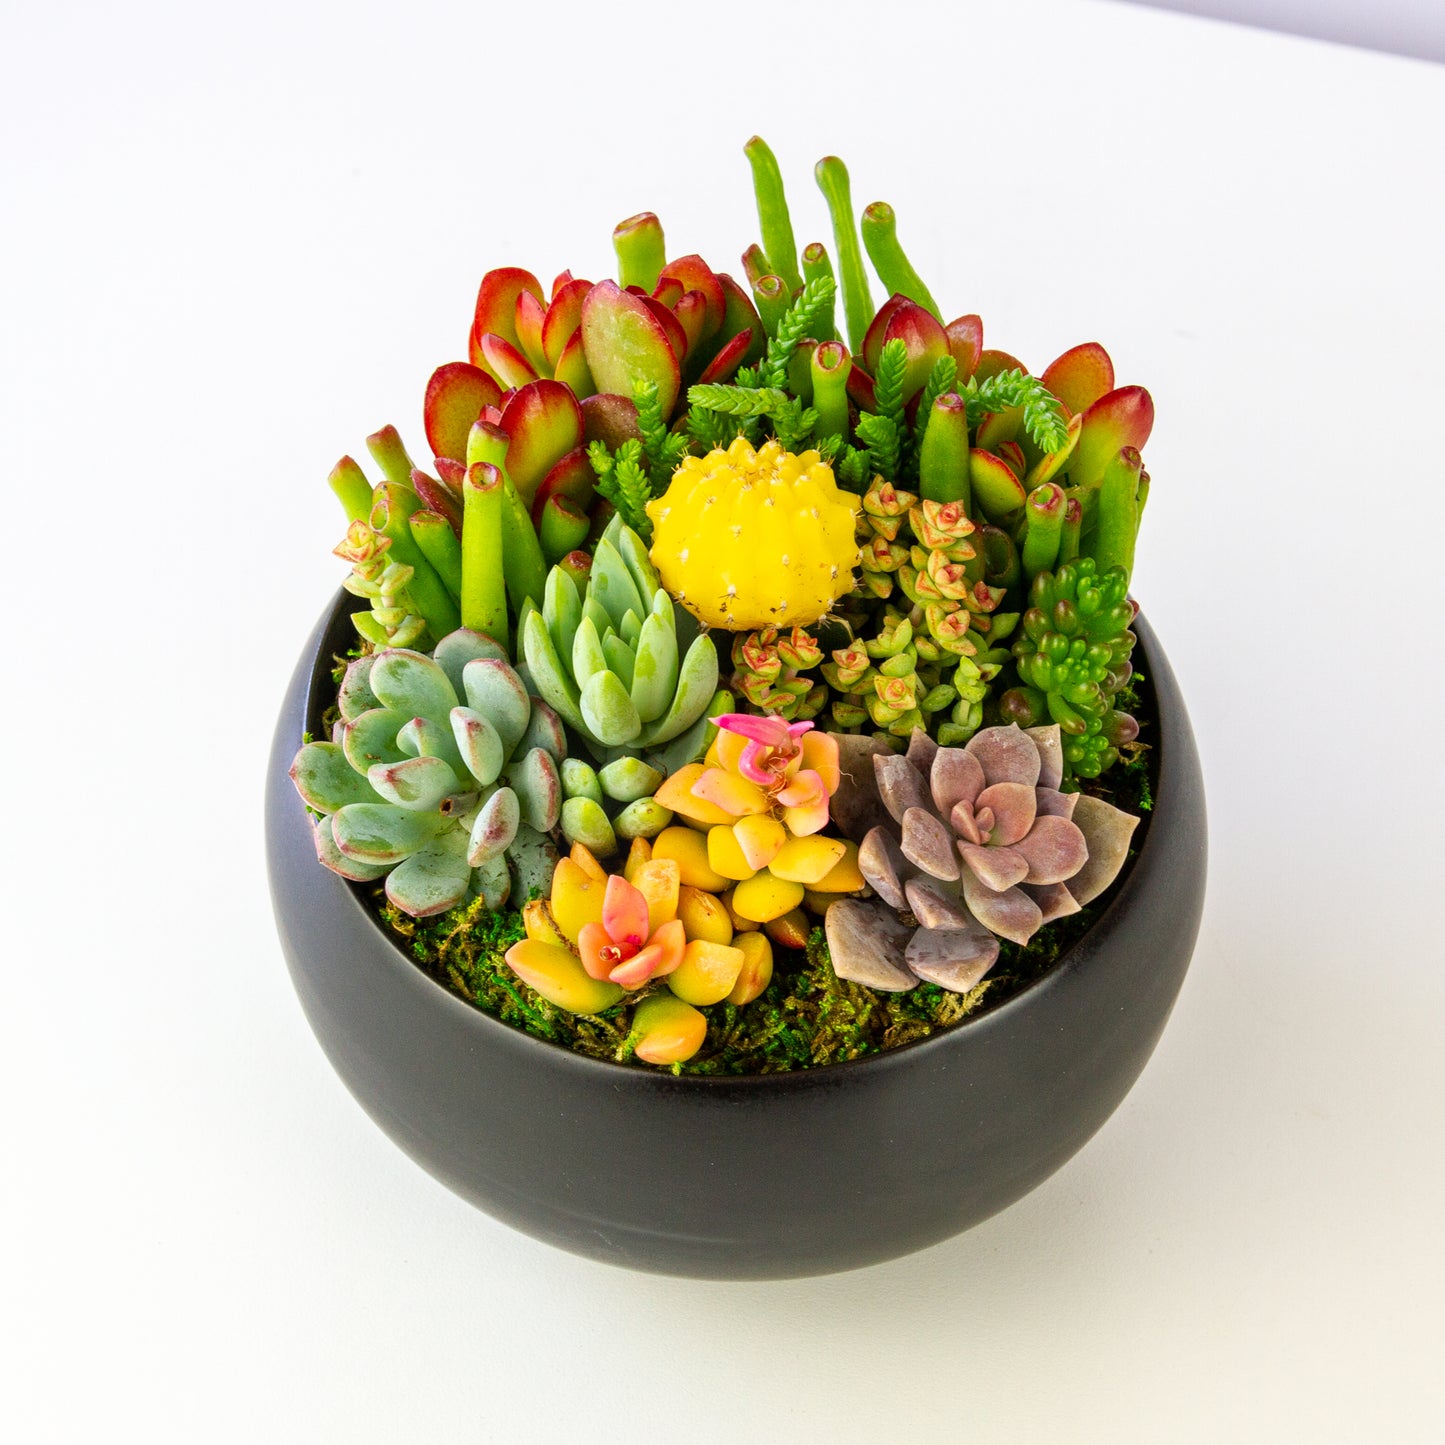 Succulent Arrangement in Ceramic Bowl - Black, Medium